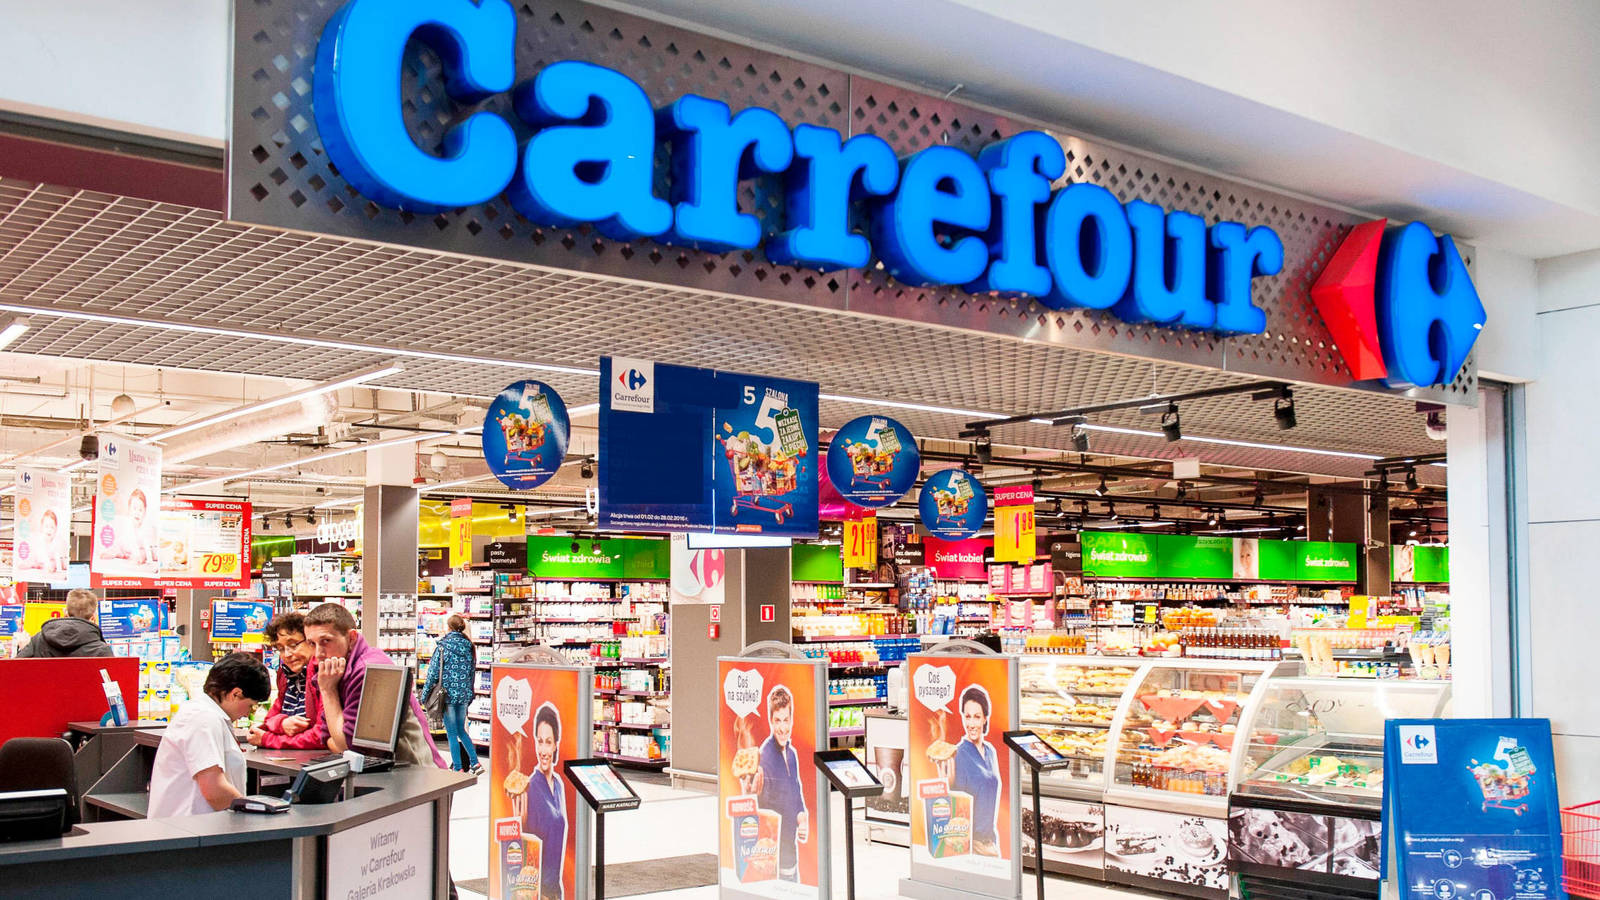 Productos argentinos en el Carrefour de España #argentina #españa #mad